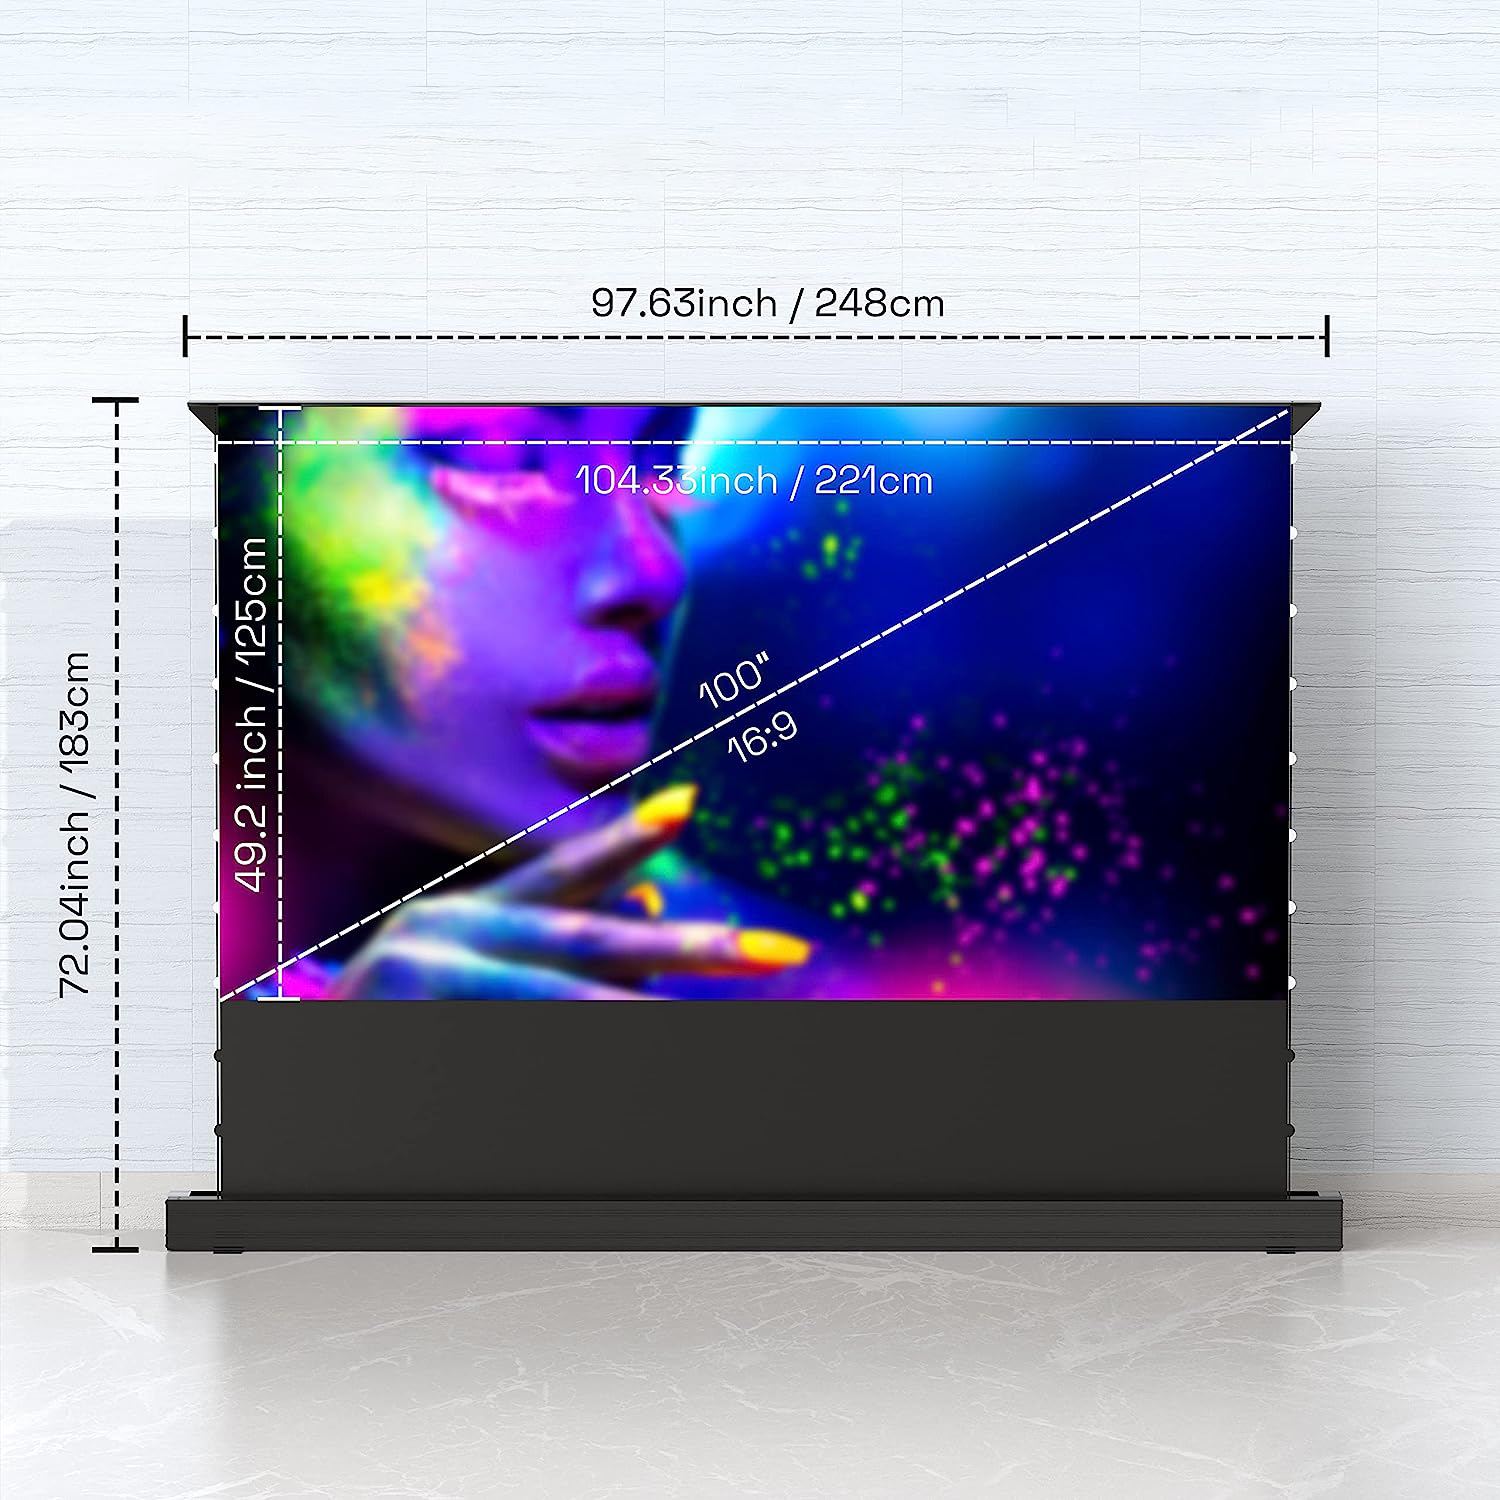 Projekcyjny ekran z podstawą, Projekcyjny ekran Pixthink 100 cali, Projekcyjny ekran 4K HD, Projekcyjny ekran na zewnątrz, Projekcyjny ekran na wieczór filmowy